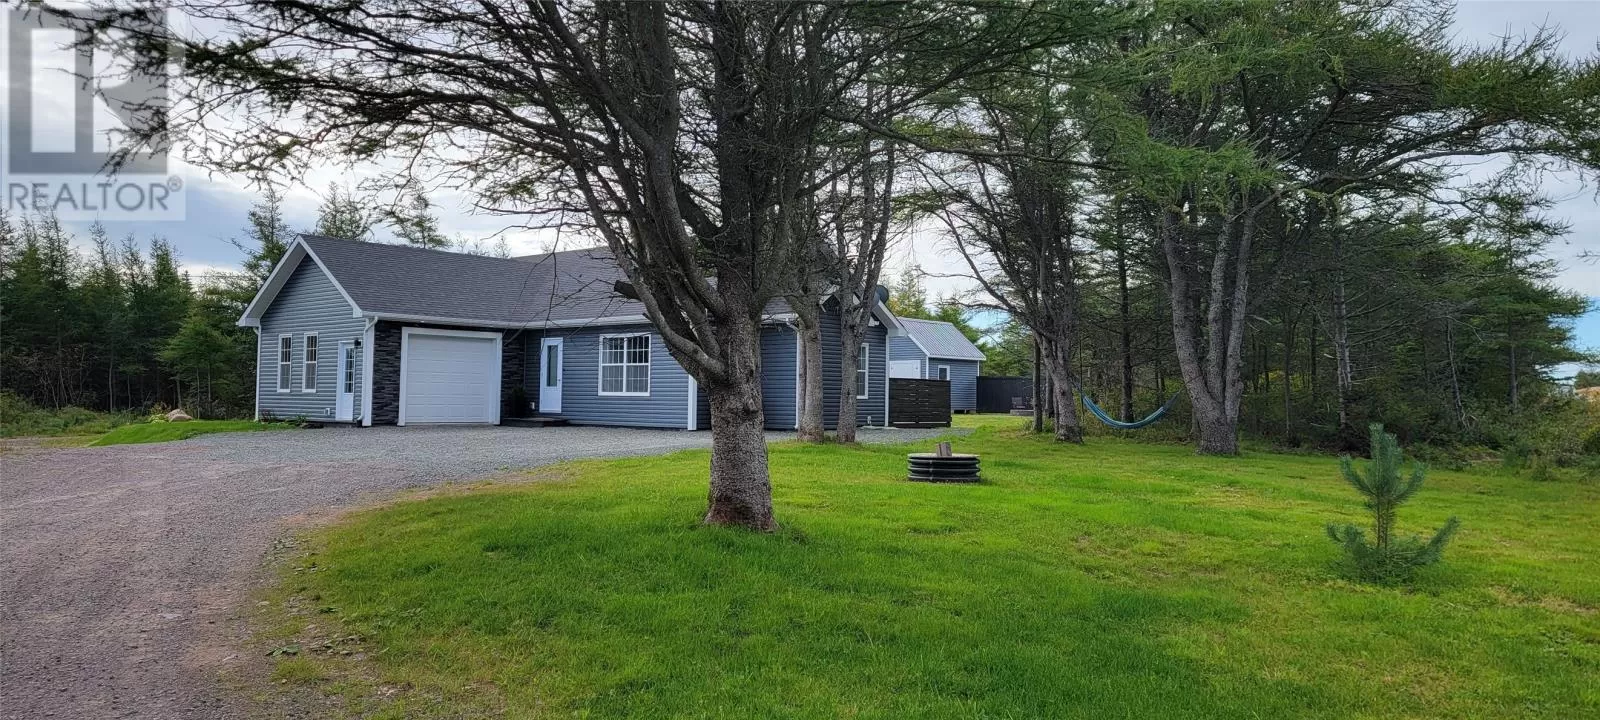 House for rent: 380 Kimberley Farm Road, Winterland, Newfoundland & Labrador A0E 2Y0